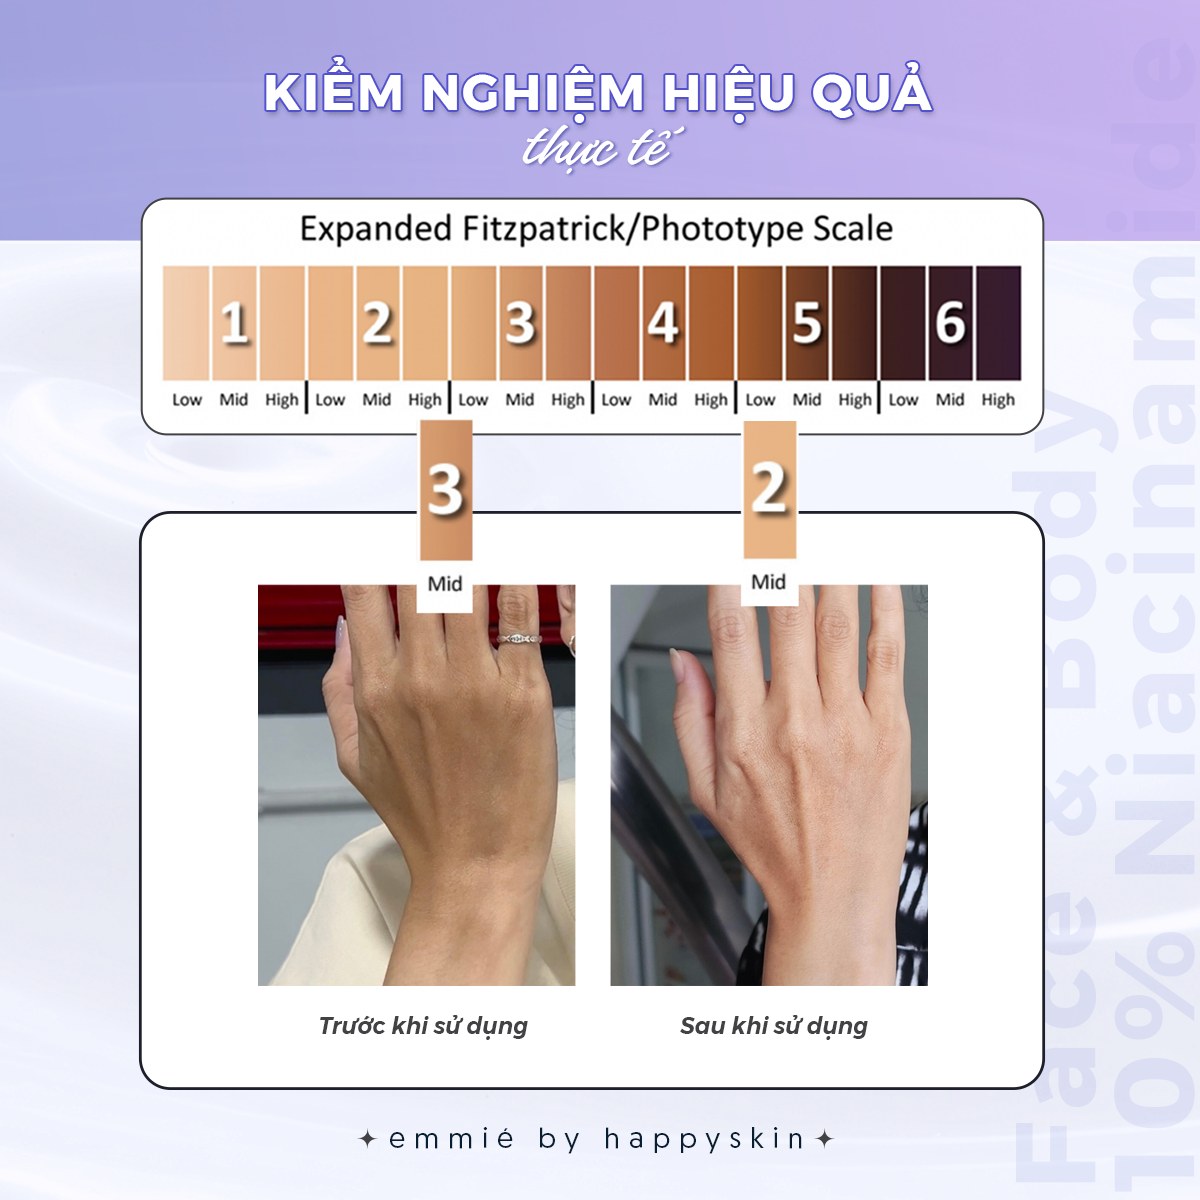 emmie-by-happyskin-kem-duong-trang-emmie-face-body-emulsion-10-niacinamide-3